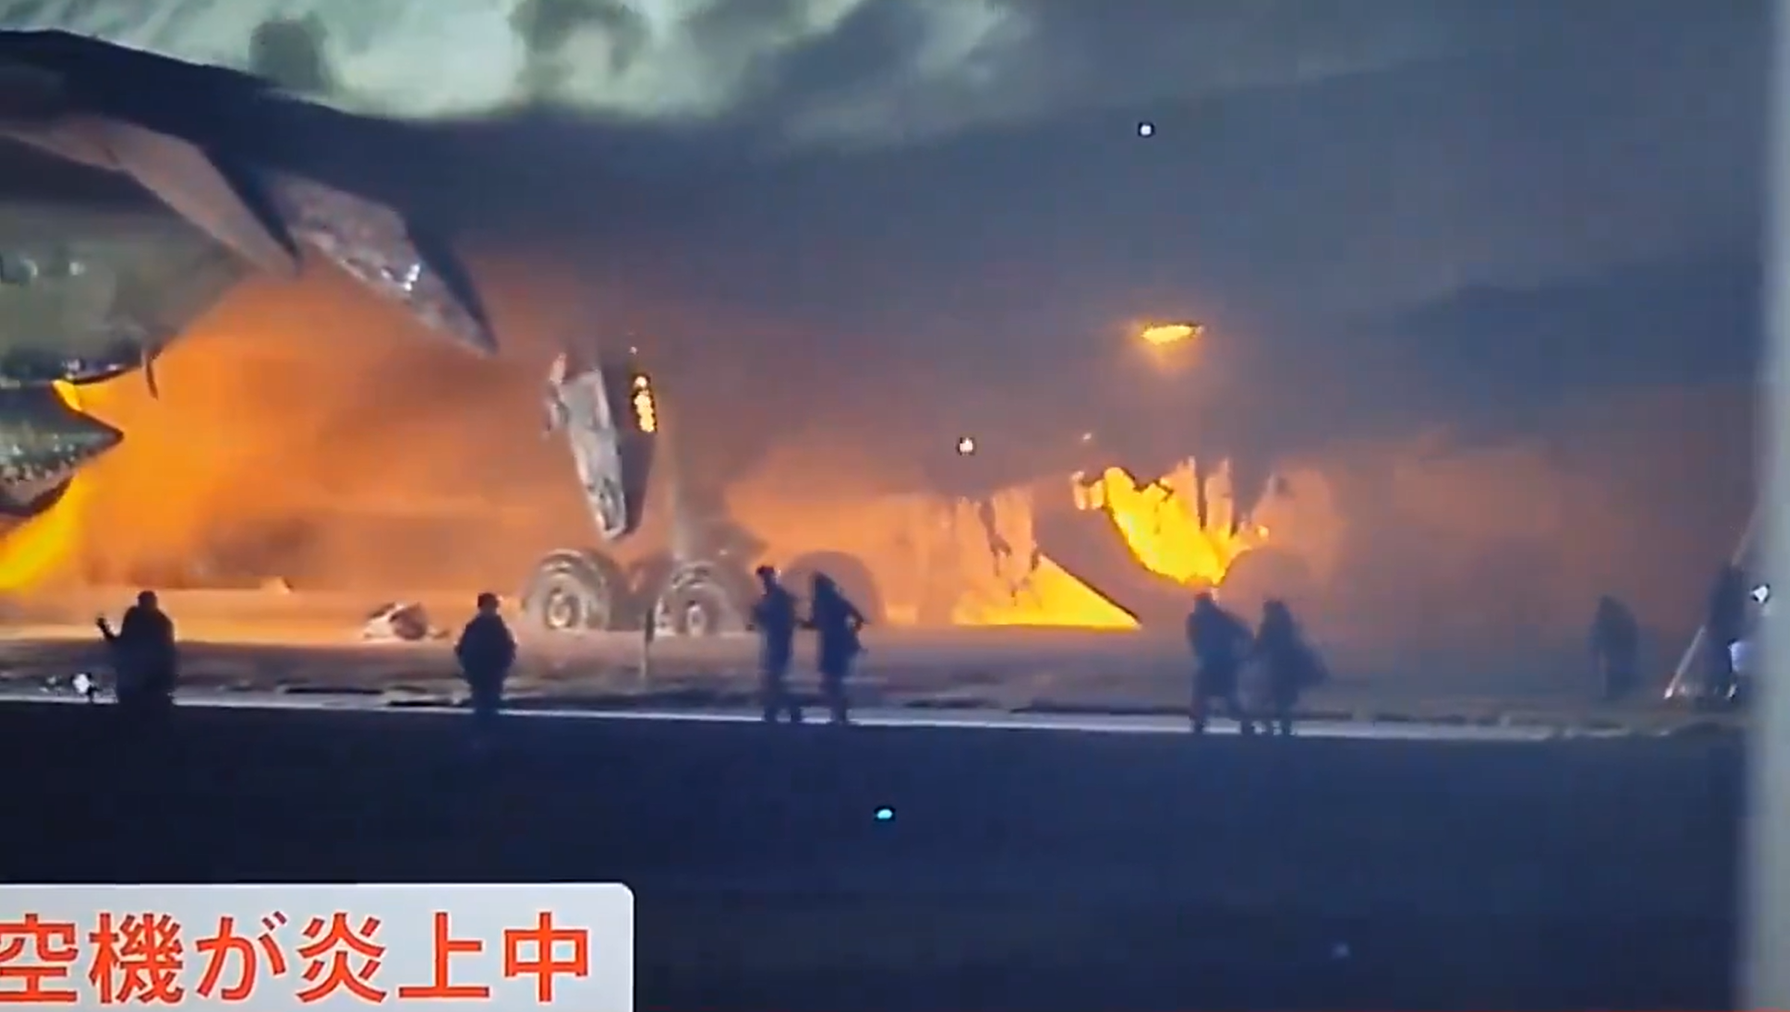 لحظة اندلاع النيران في طائرة يابانية وهروب الركاب